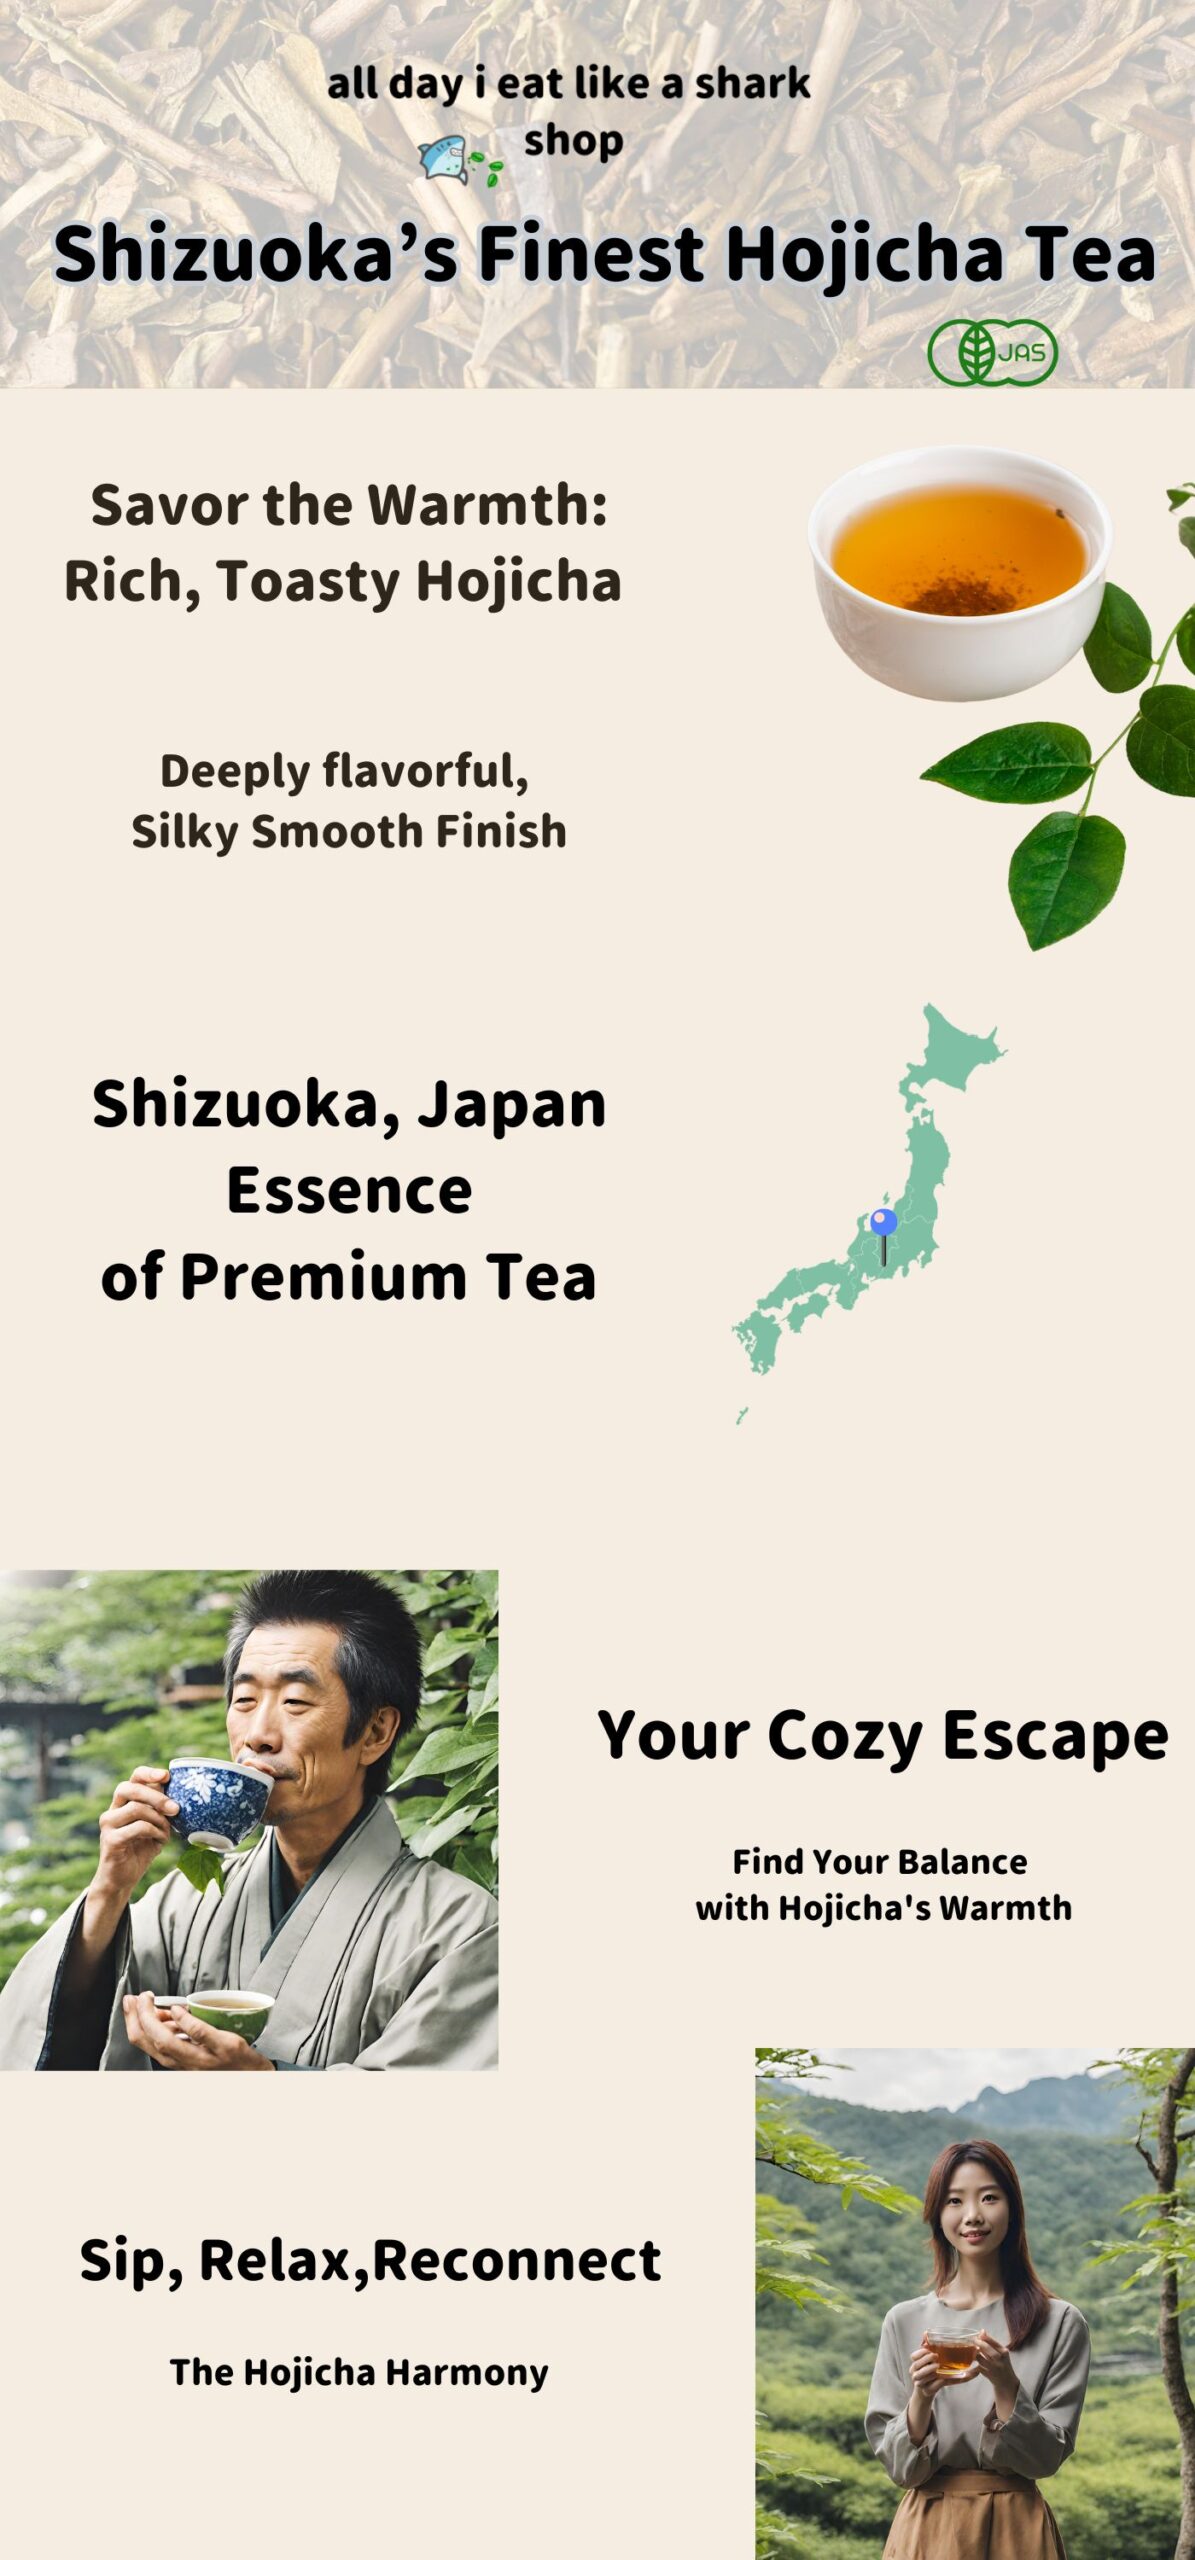 Shizuoka’s Finest Hojicha Tea infographic